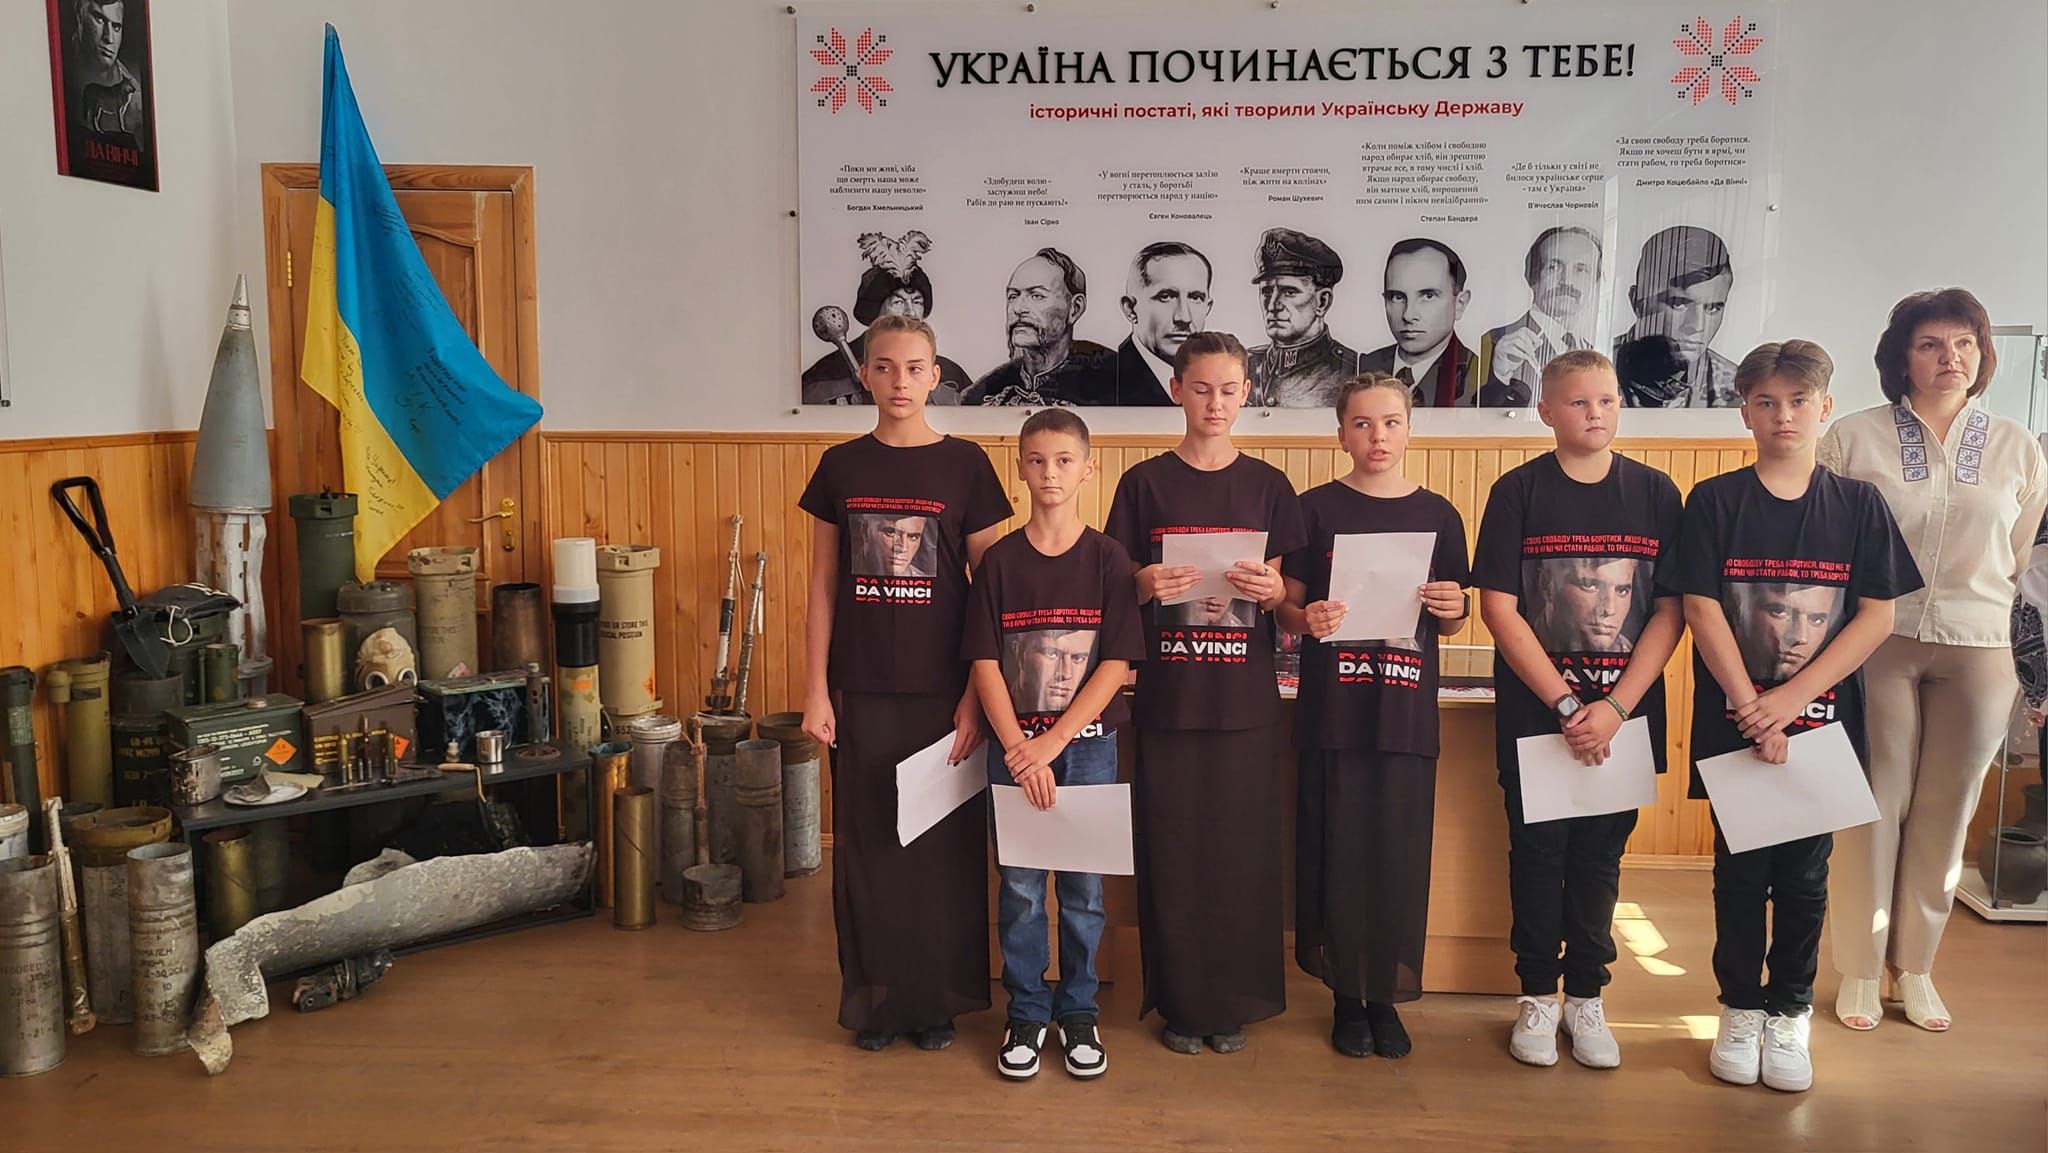 На Прикарпатті відкрили музей Героя України «Да Вінчі» у школі